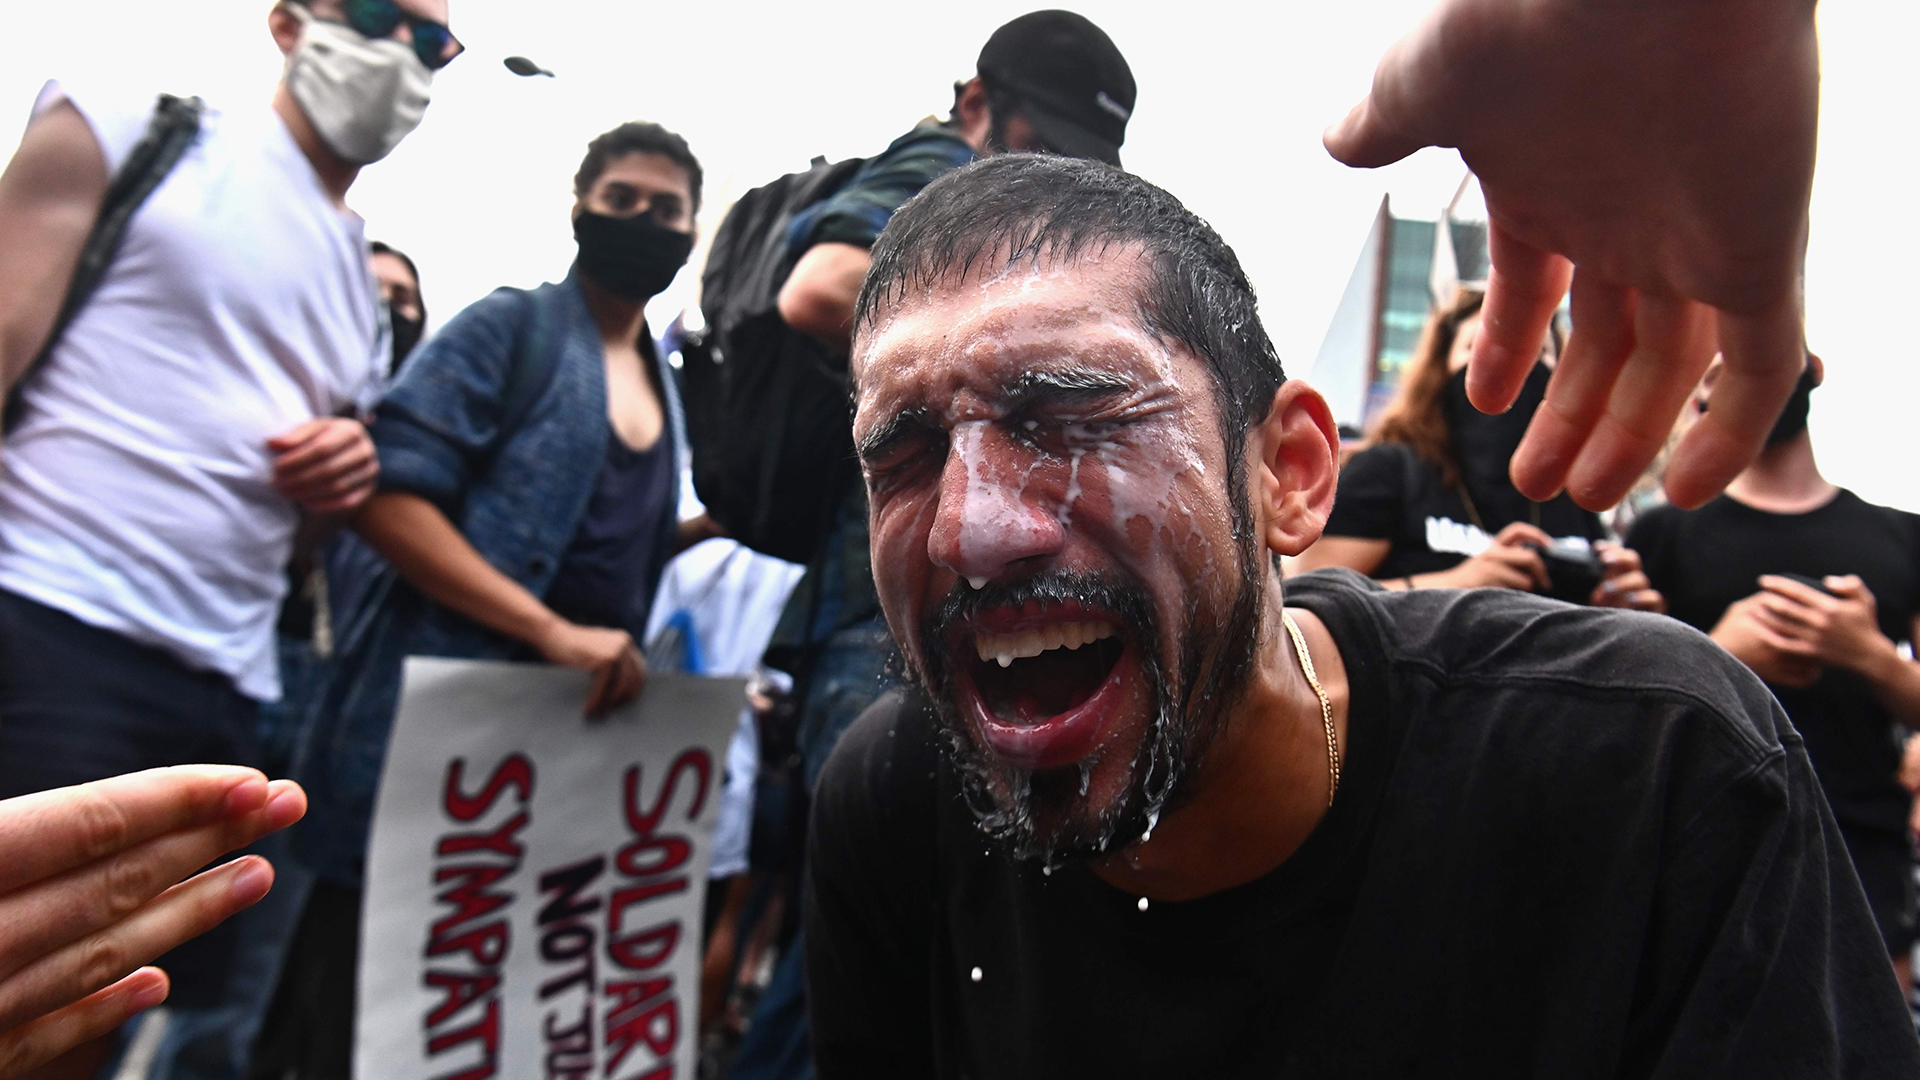 Ein Demonstrant versucht während einer Protestveranstaltung in New York mit Milch, seine von Tränengas getroffenen Augen zu behandeln. | AFP